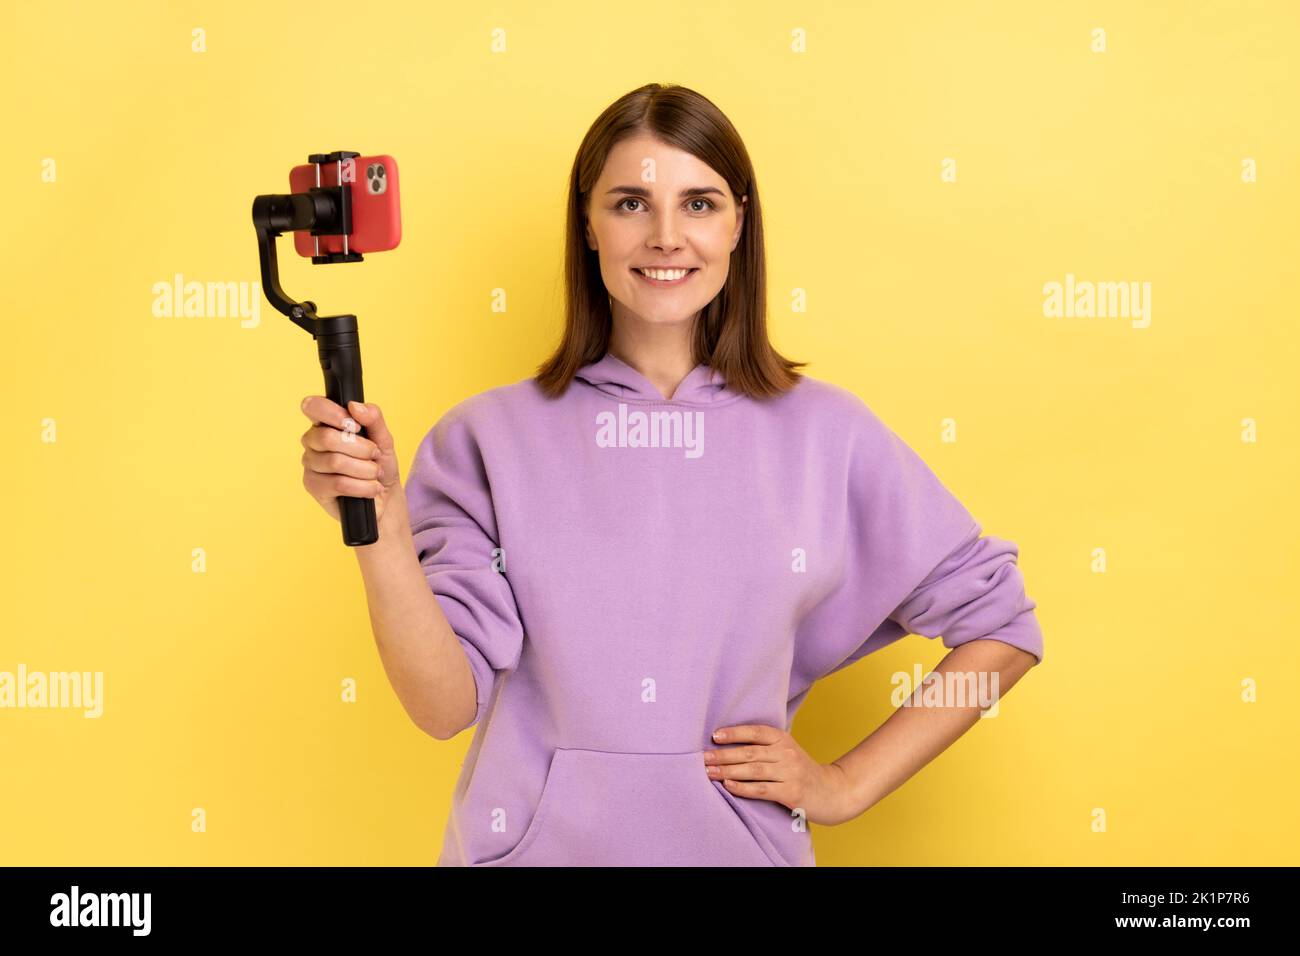 Portrait einer entzückten Frau, die per Handy und Steadicam Livestream gesendet, die Hand an den Hüften hält und einen purpurfarbenen Hoodie trägt. Innenaufnahme des Studios isoliert auf gelbem Hintergrund. Stockfoto